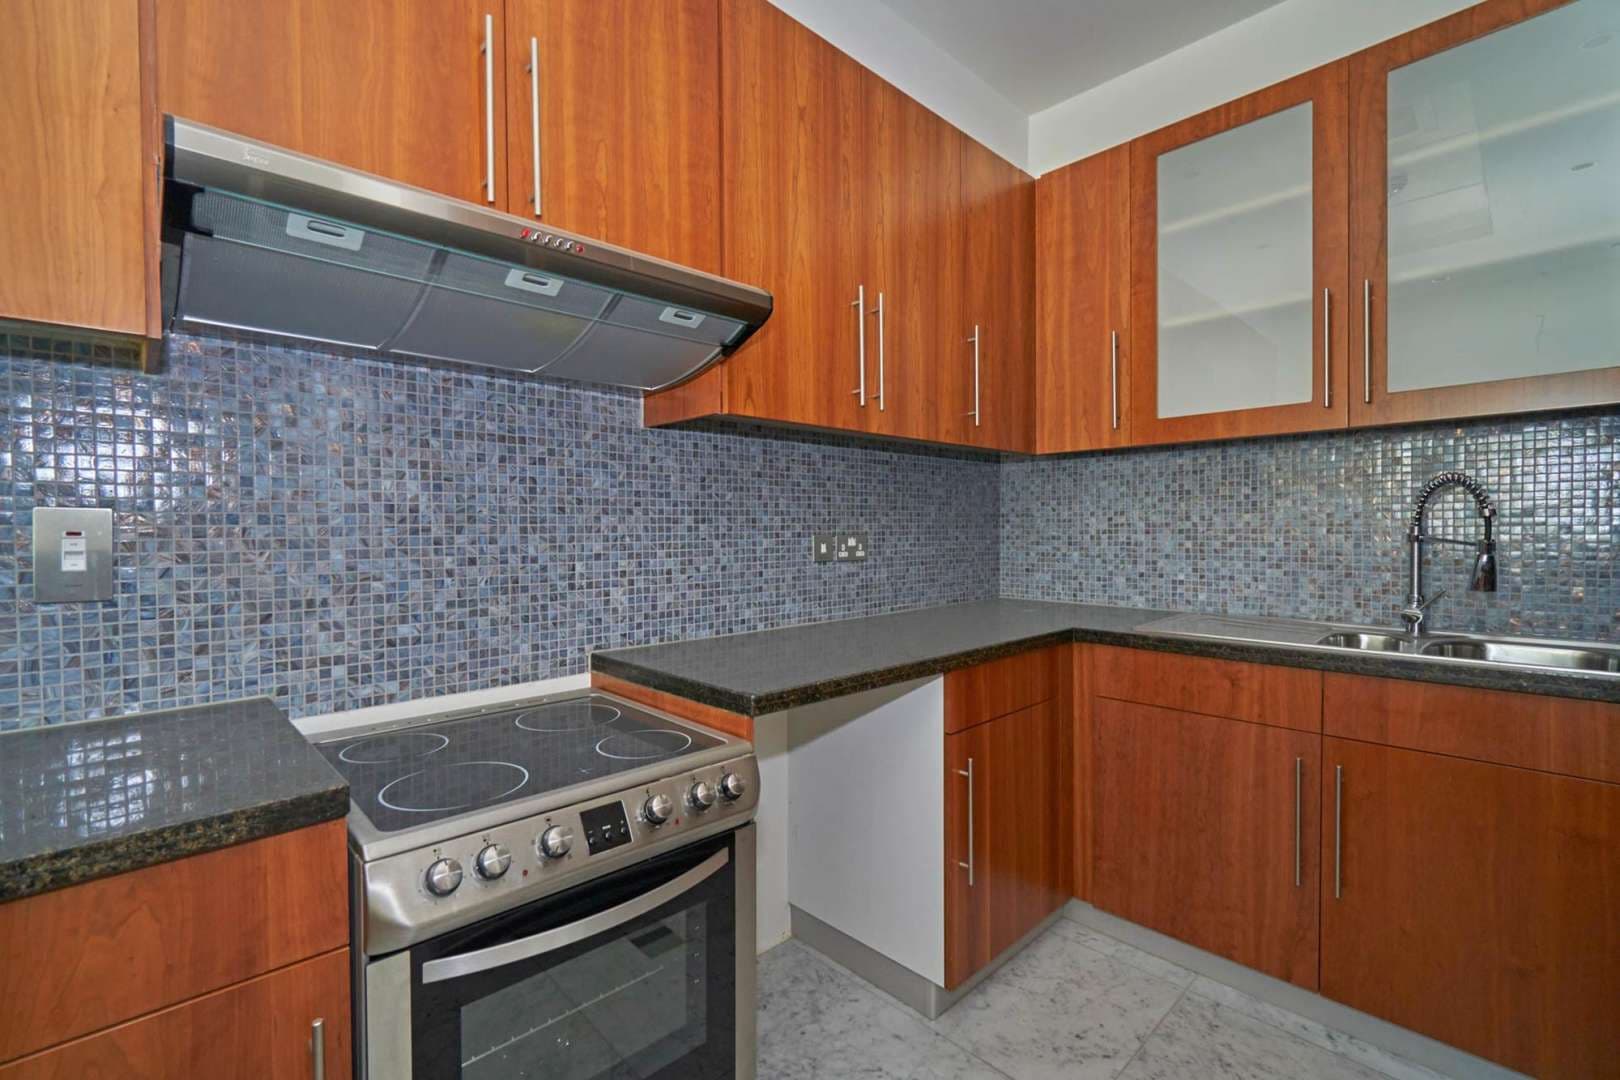 1 Bedroom Apartment For Rent Central Park Tower Lp05835 12e751d202d68a00.jpg